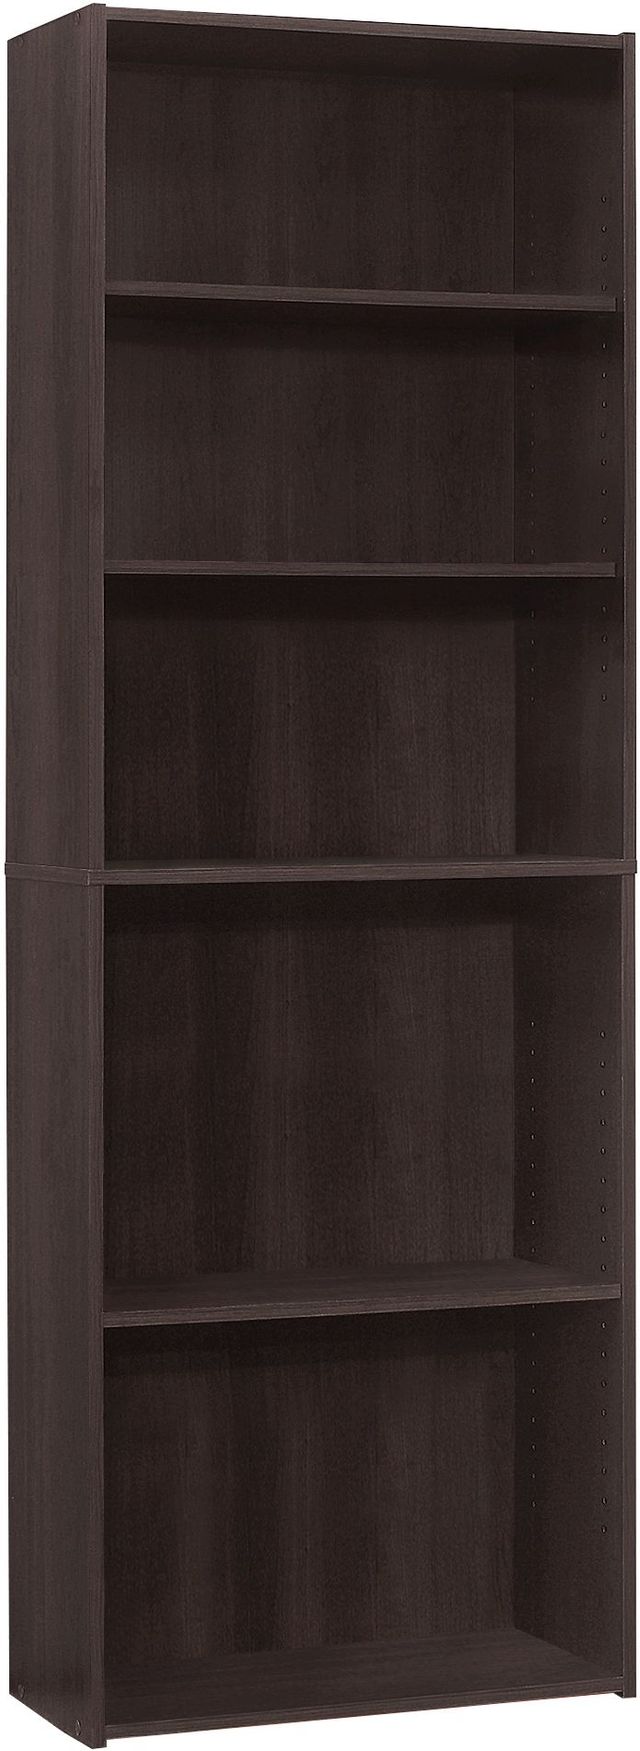 Monarch Specialties Inc. 72"H Espresso 5 Shelves Bookcase